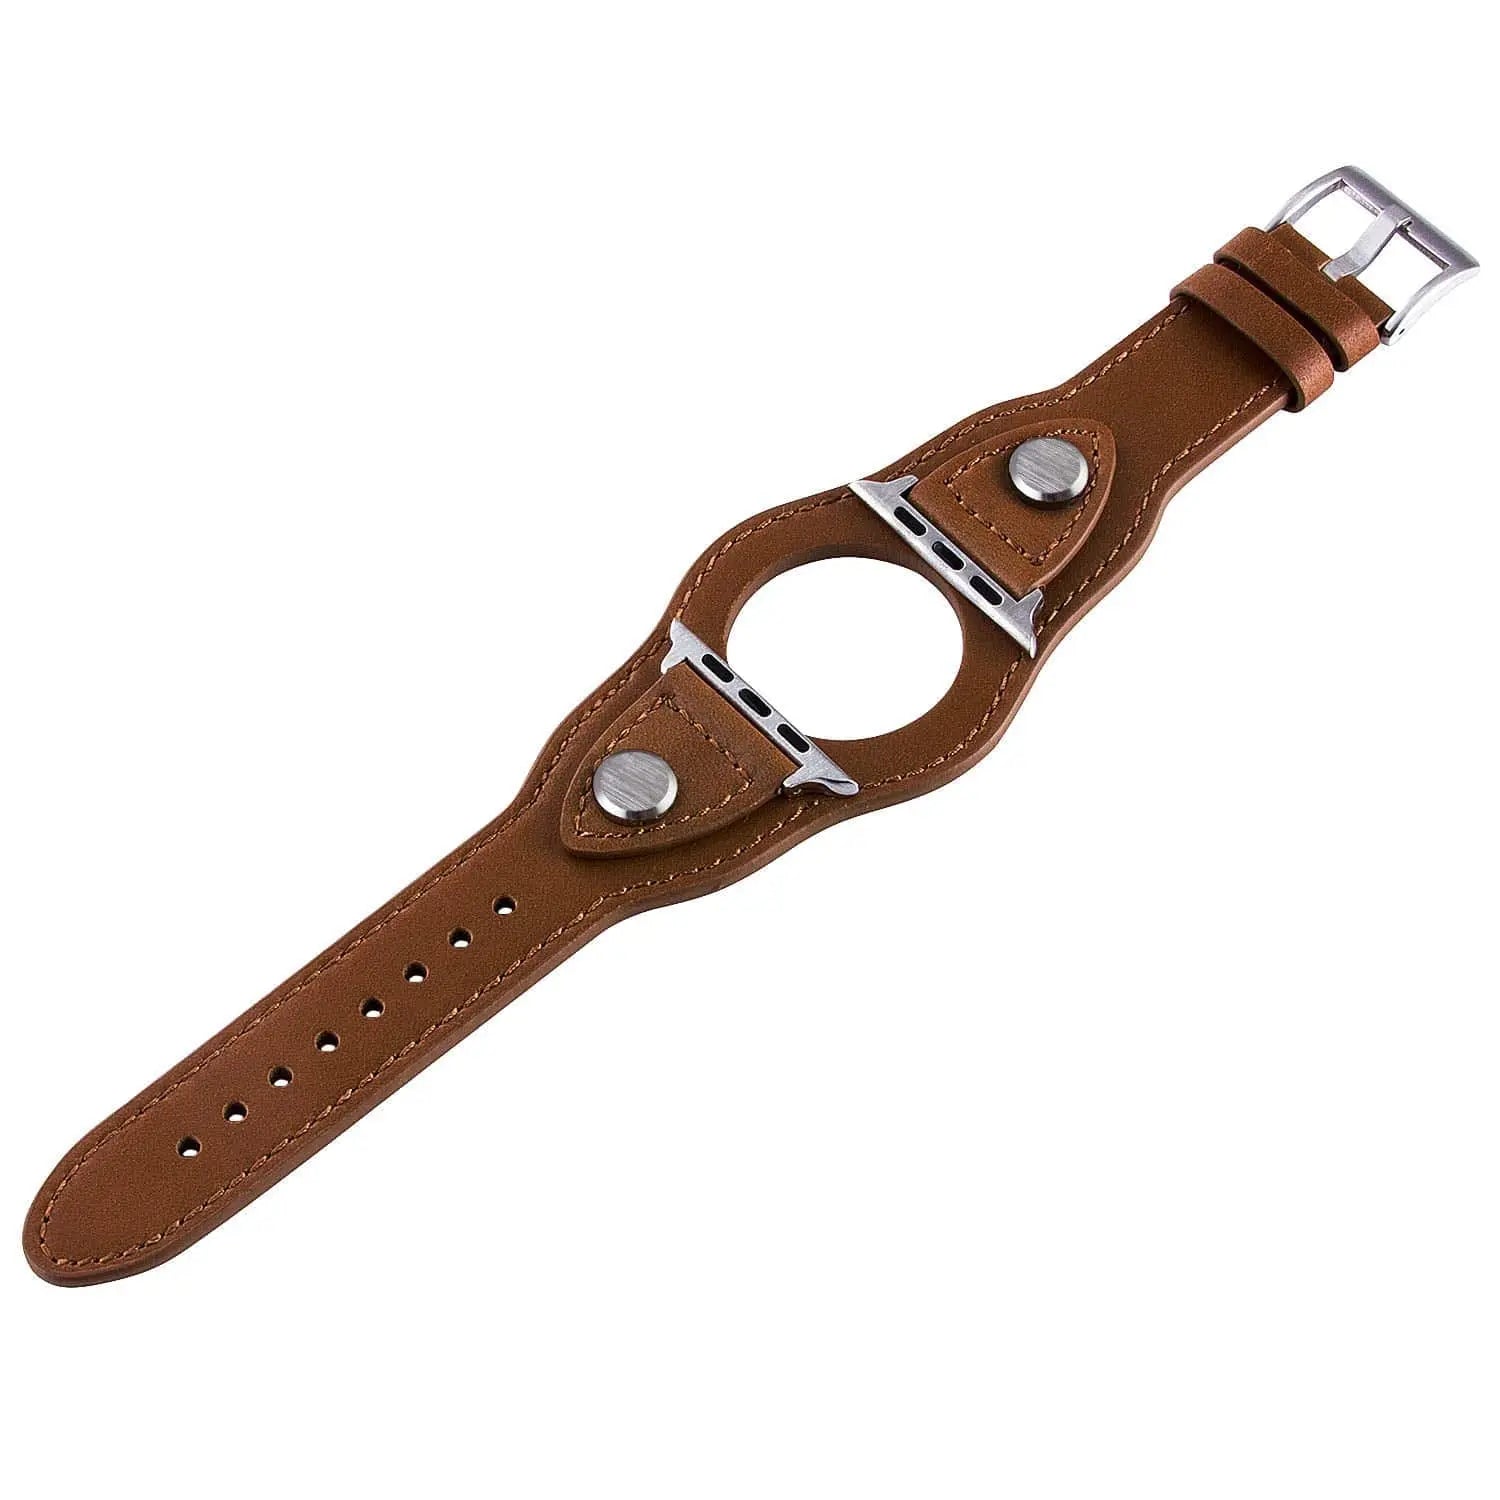 Premium Custom Genuine Cowhide Leather Apple Watch Band - Pinnacle Luxuries